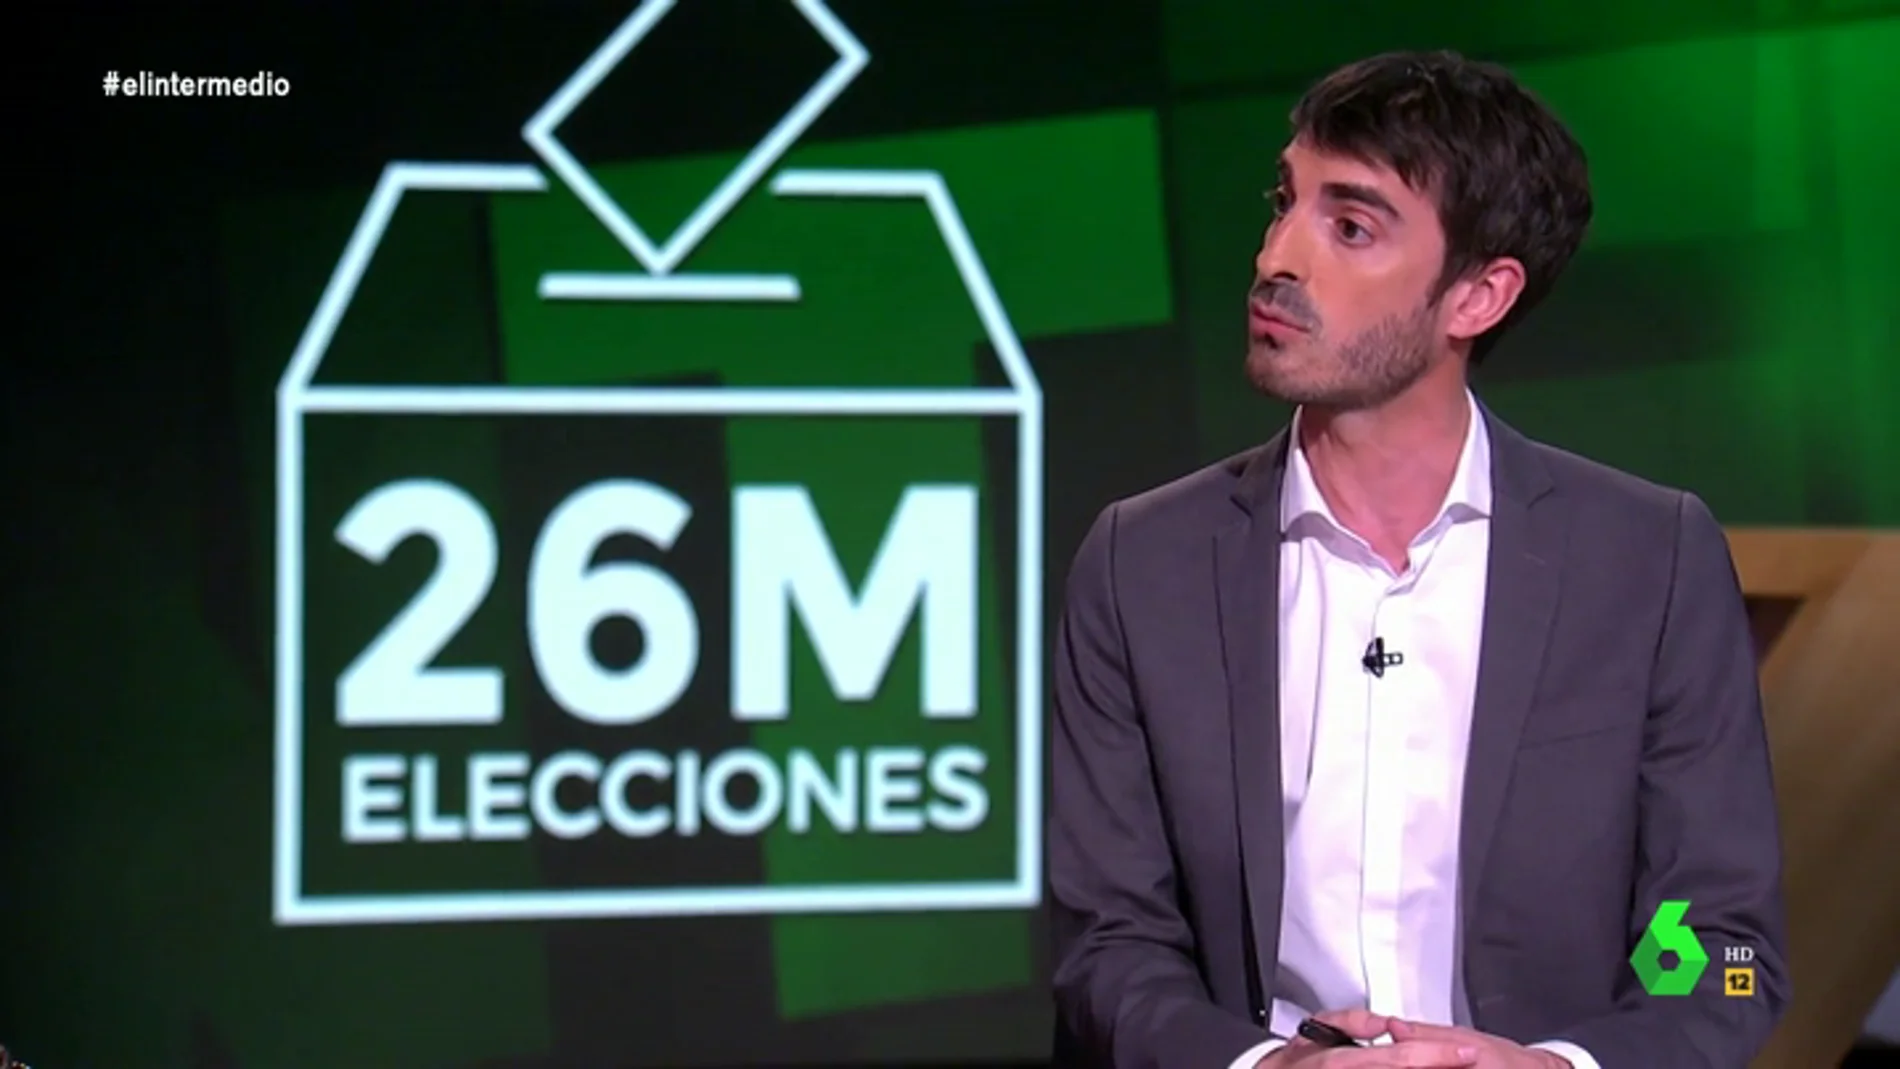 La advertencia de Pablo Simón a los españoles: "El elemento decisivo para el 26M estará en el bloque que más se abstenga"